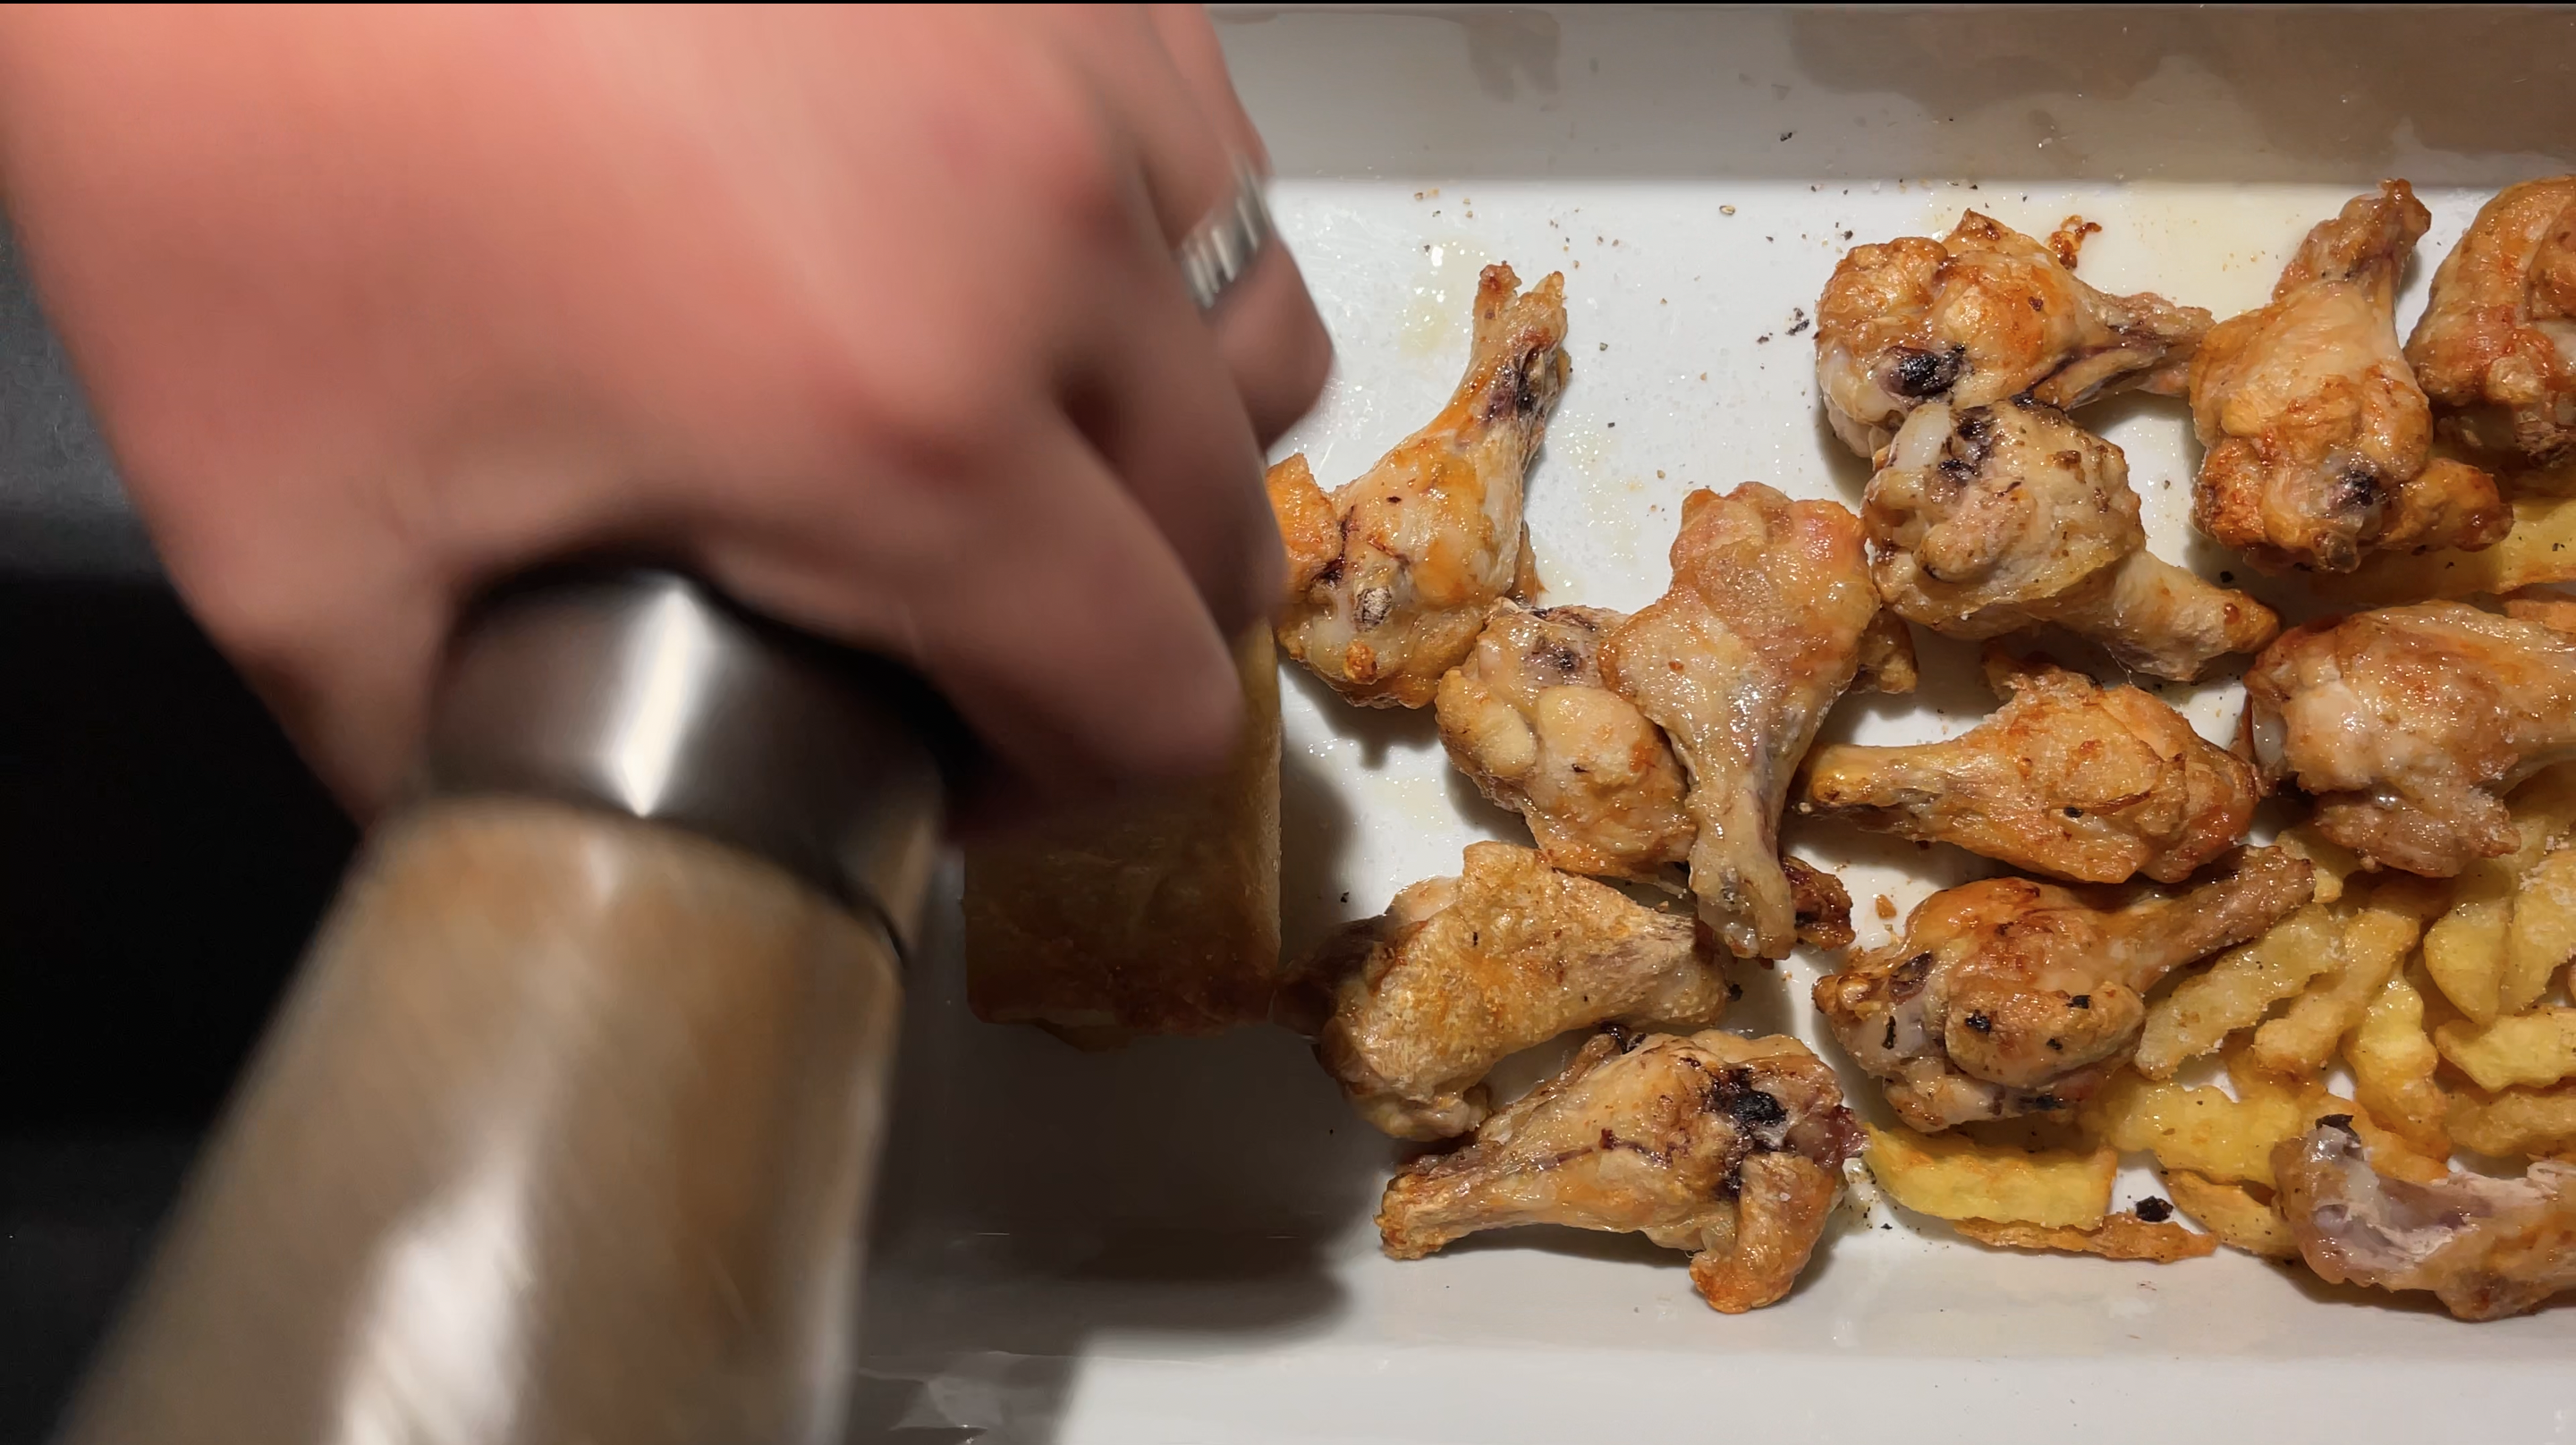 Seasoning chicken made in an airfryer